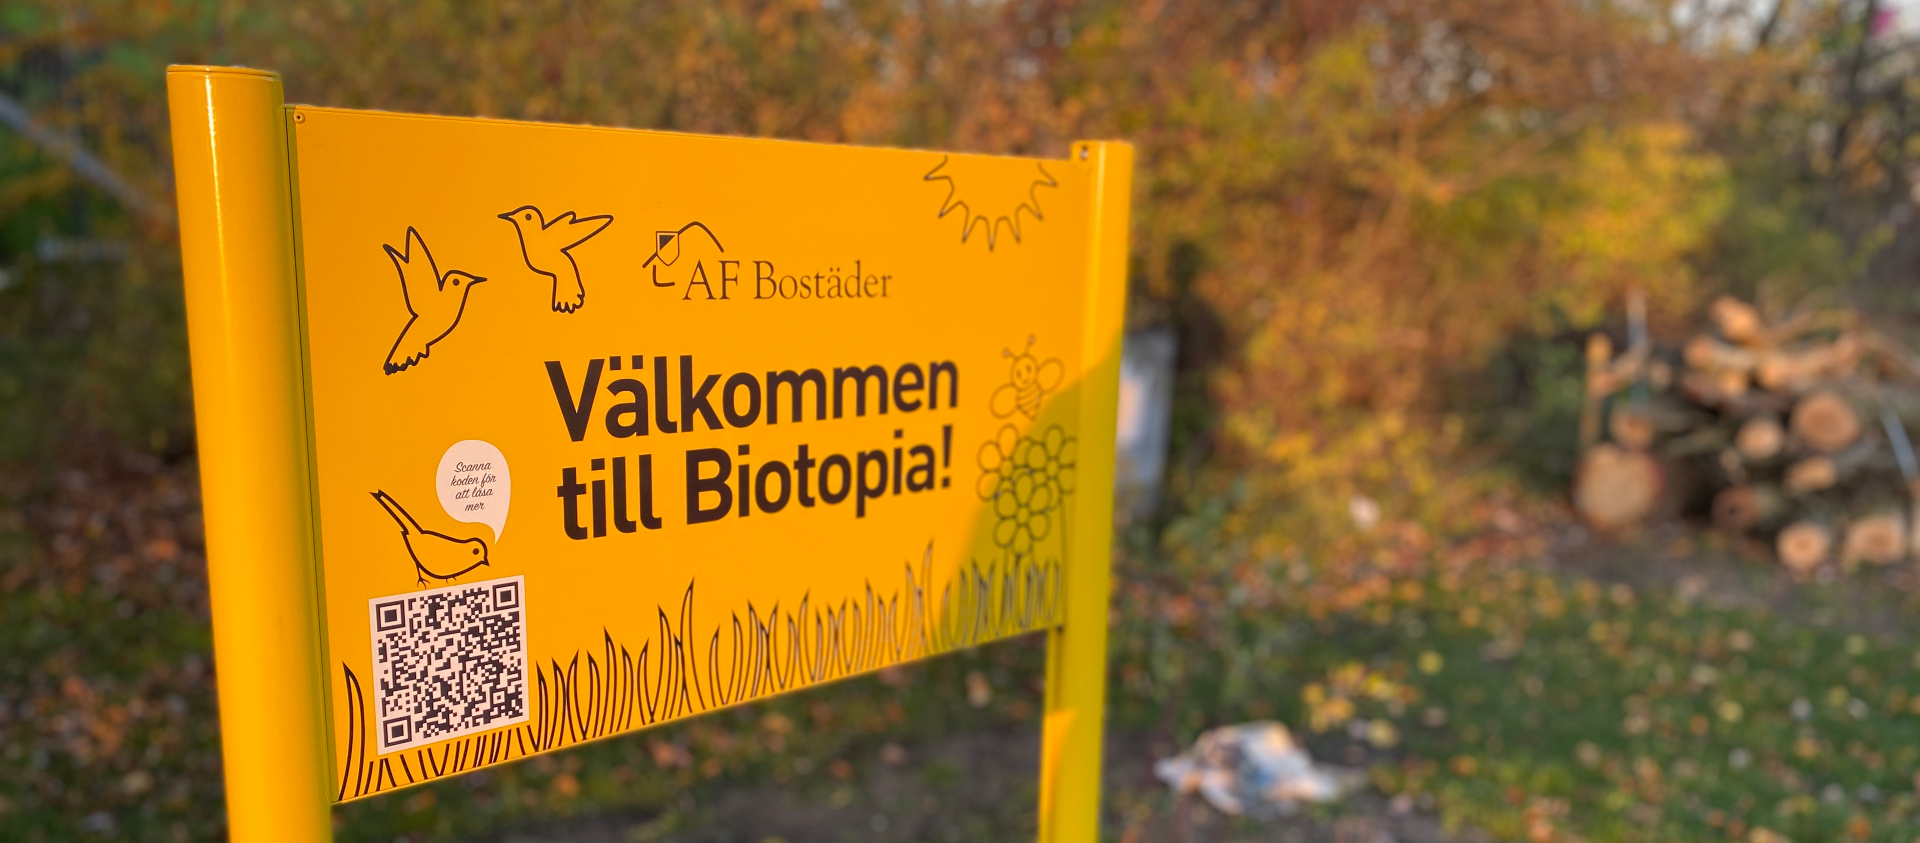 En gul skult med texten "Välkommen till Biotopia". I bakgrunden syns träd och trädstammar som är staplade på varandra.